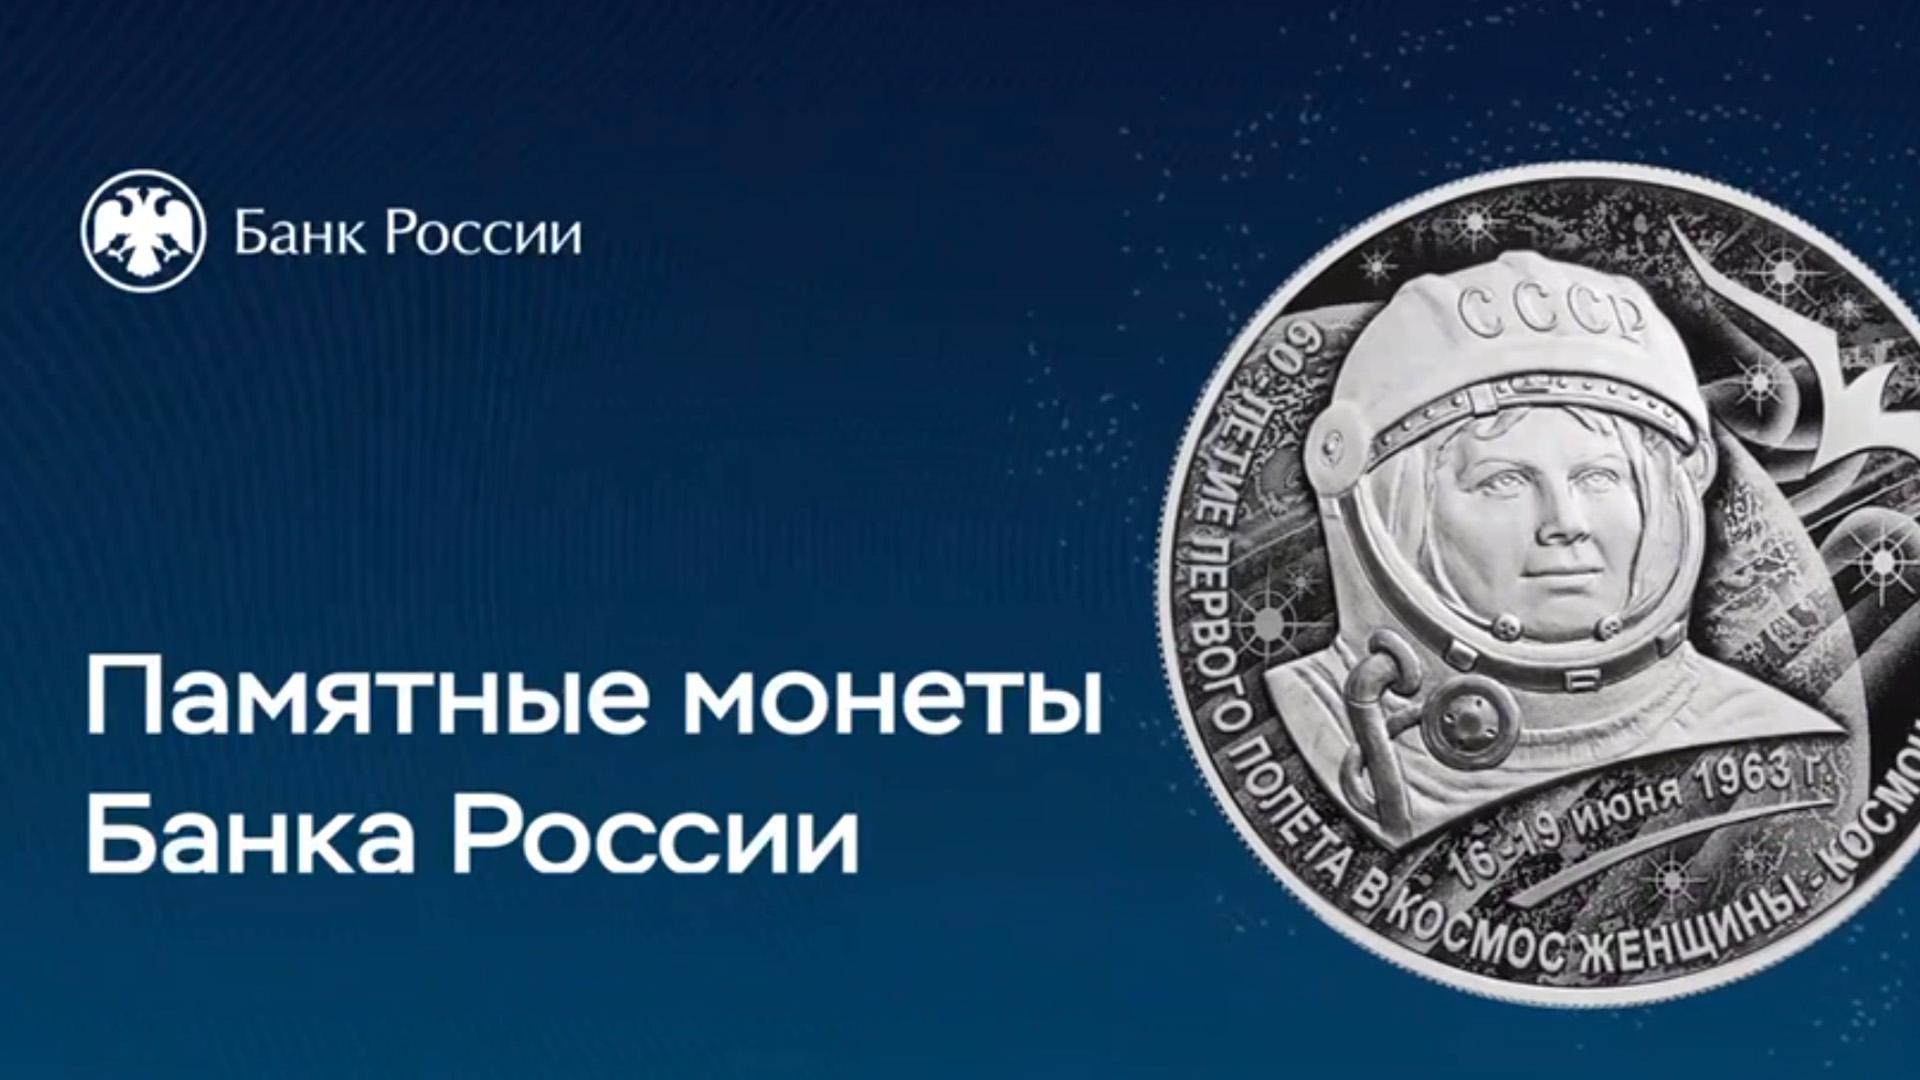 ЦБ выпустил монету в честь 60-летия полета в космос Терешковой